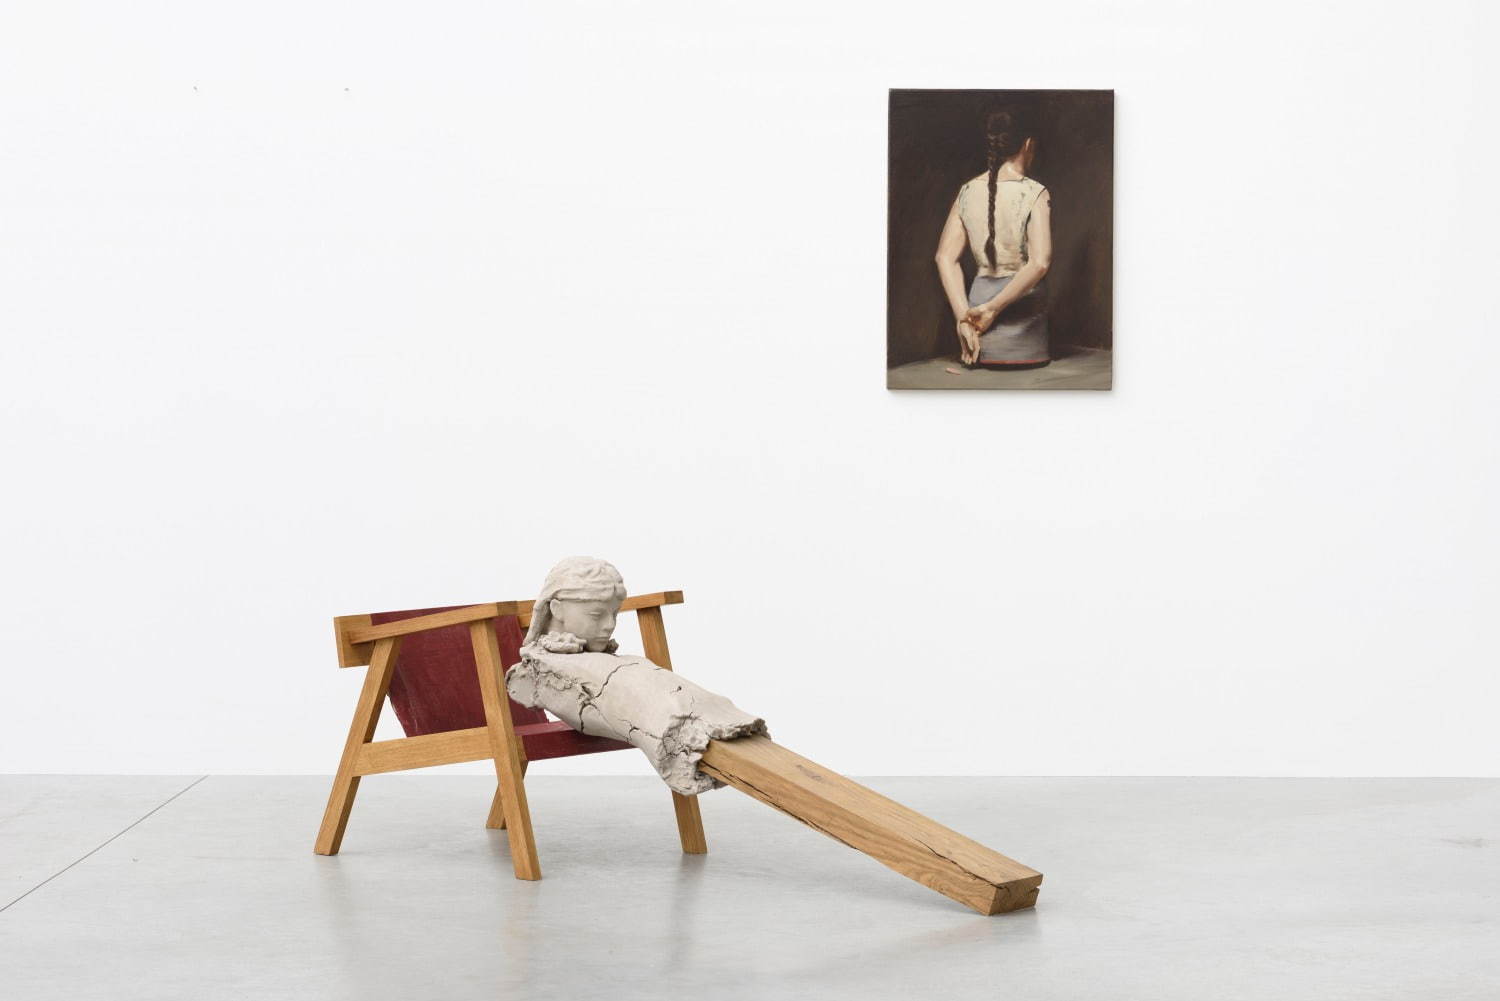 (左)マーク・マンダース《椅子の上の乾いた像》2011-2015
(右)ミヒャエル・ボレマンス《オートマト(I)》2008
Photo: Peter Cox
Courtesy: Zeno X Gallery, Antwerp, Gallery Koyanagi, Tokyo, Tanya Bonakdar Gallery, New York/Los Angeles & David Zwirner